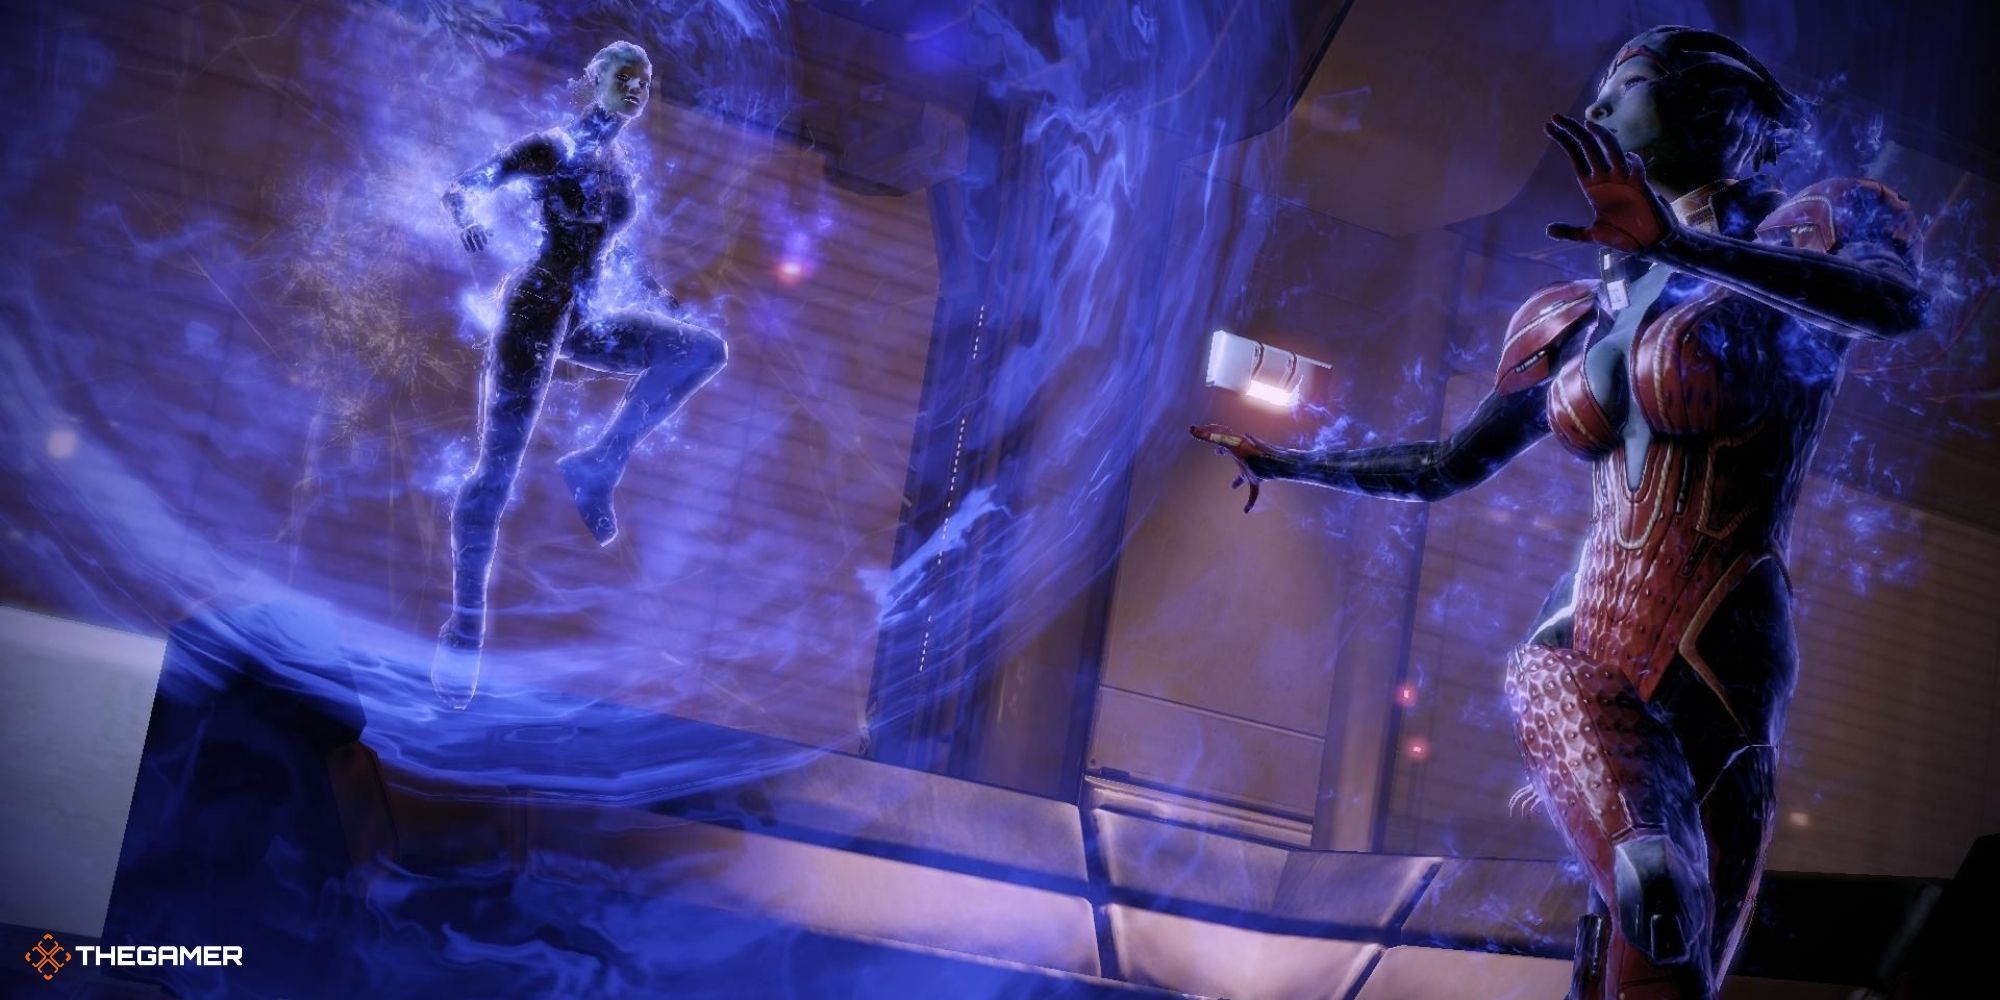 Mass Effect 2 - Samara using Biotics